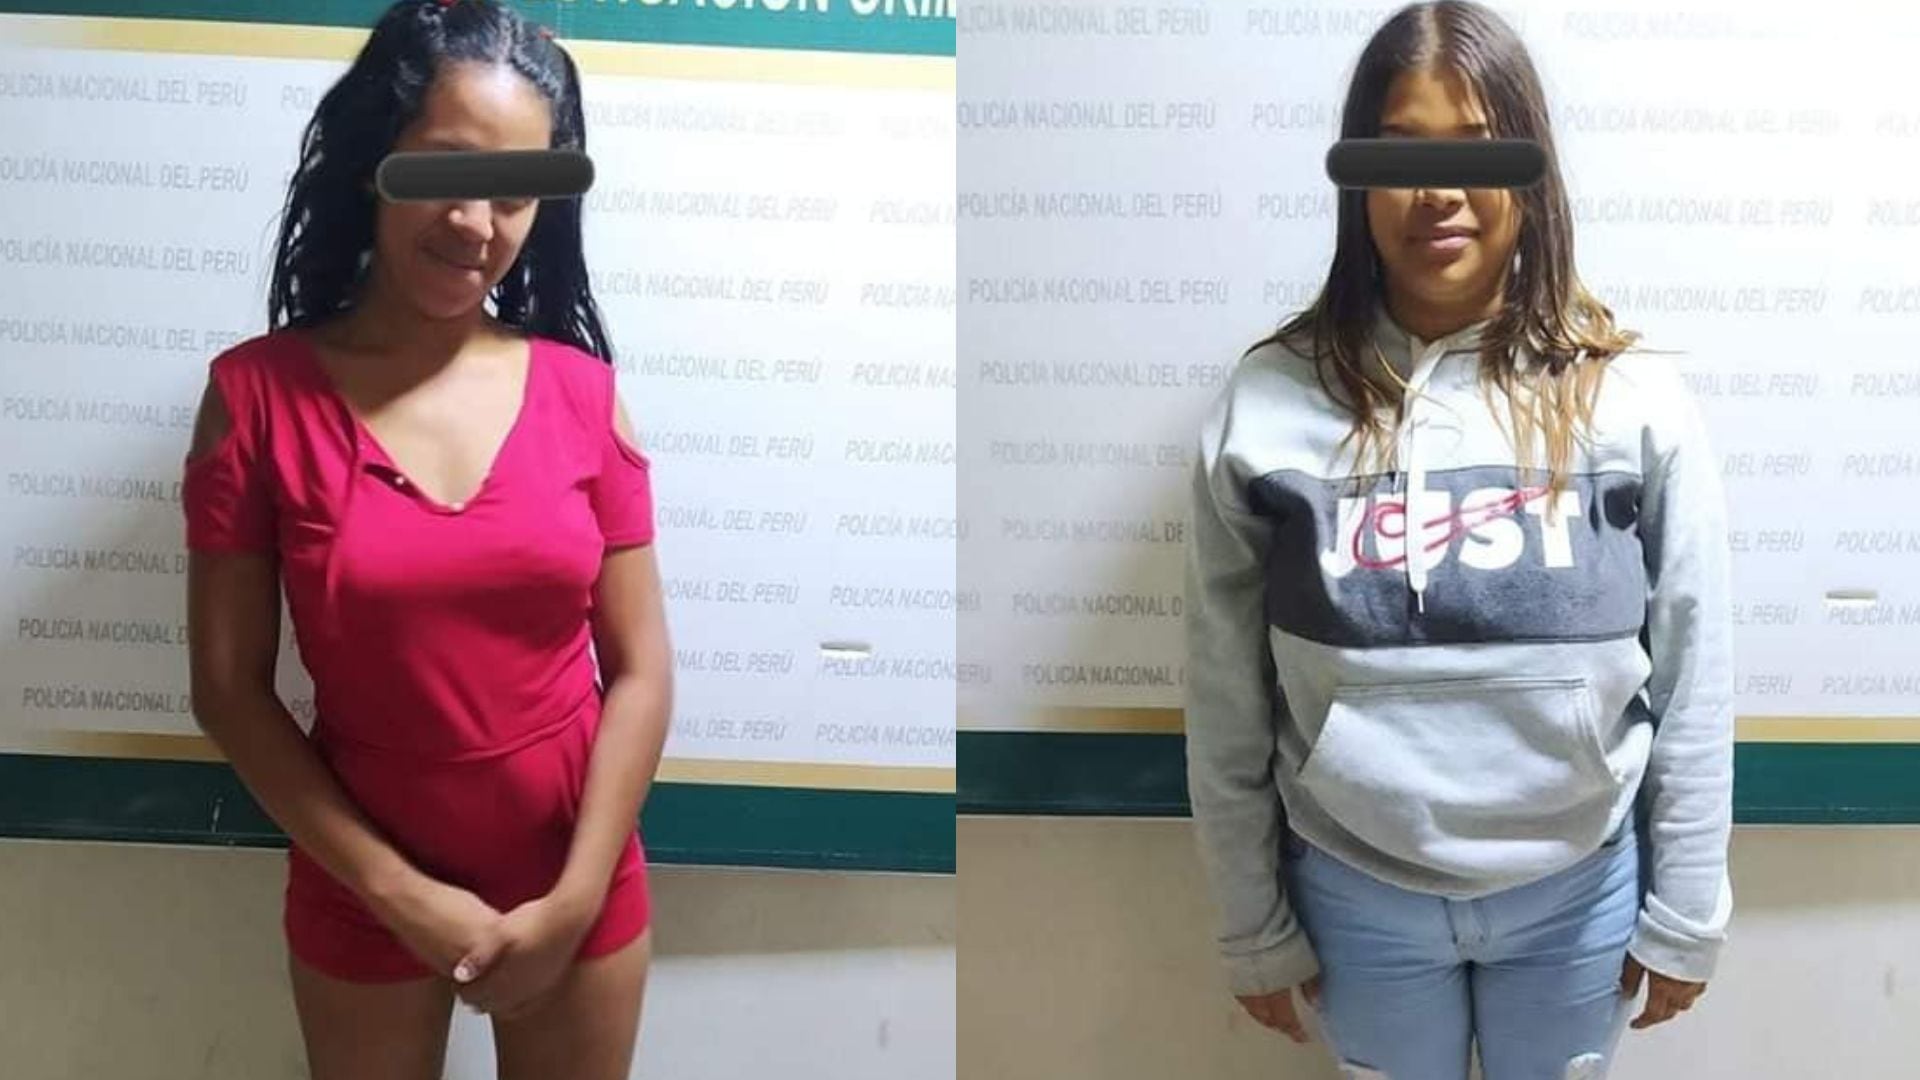 Las extranjeras Braysmary Michelle Lugo Martínez (19) y Eidelyn del Valle Berrío Gonzales (19) son acusadas del asesinato de la enfermera Ericka Hernández Olivares. (Composición: Infobae Perú)